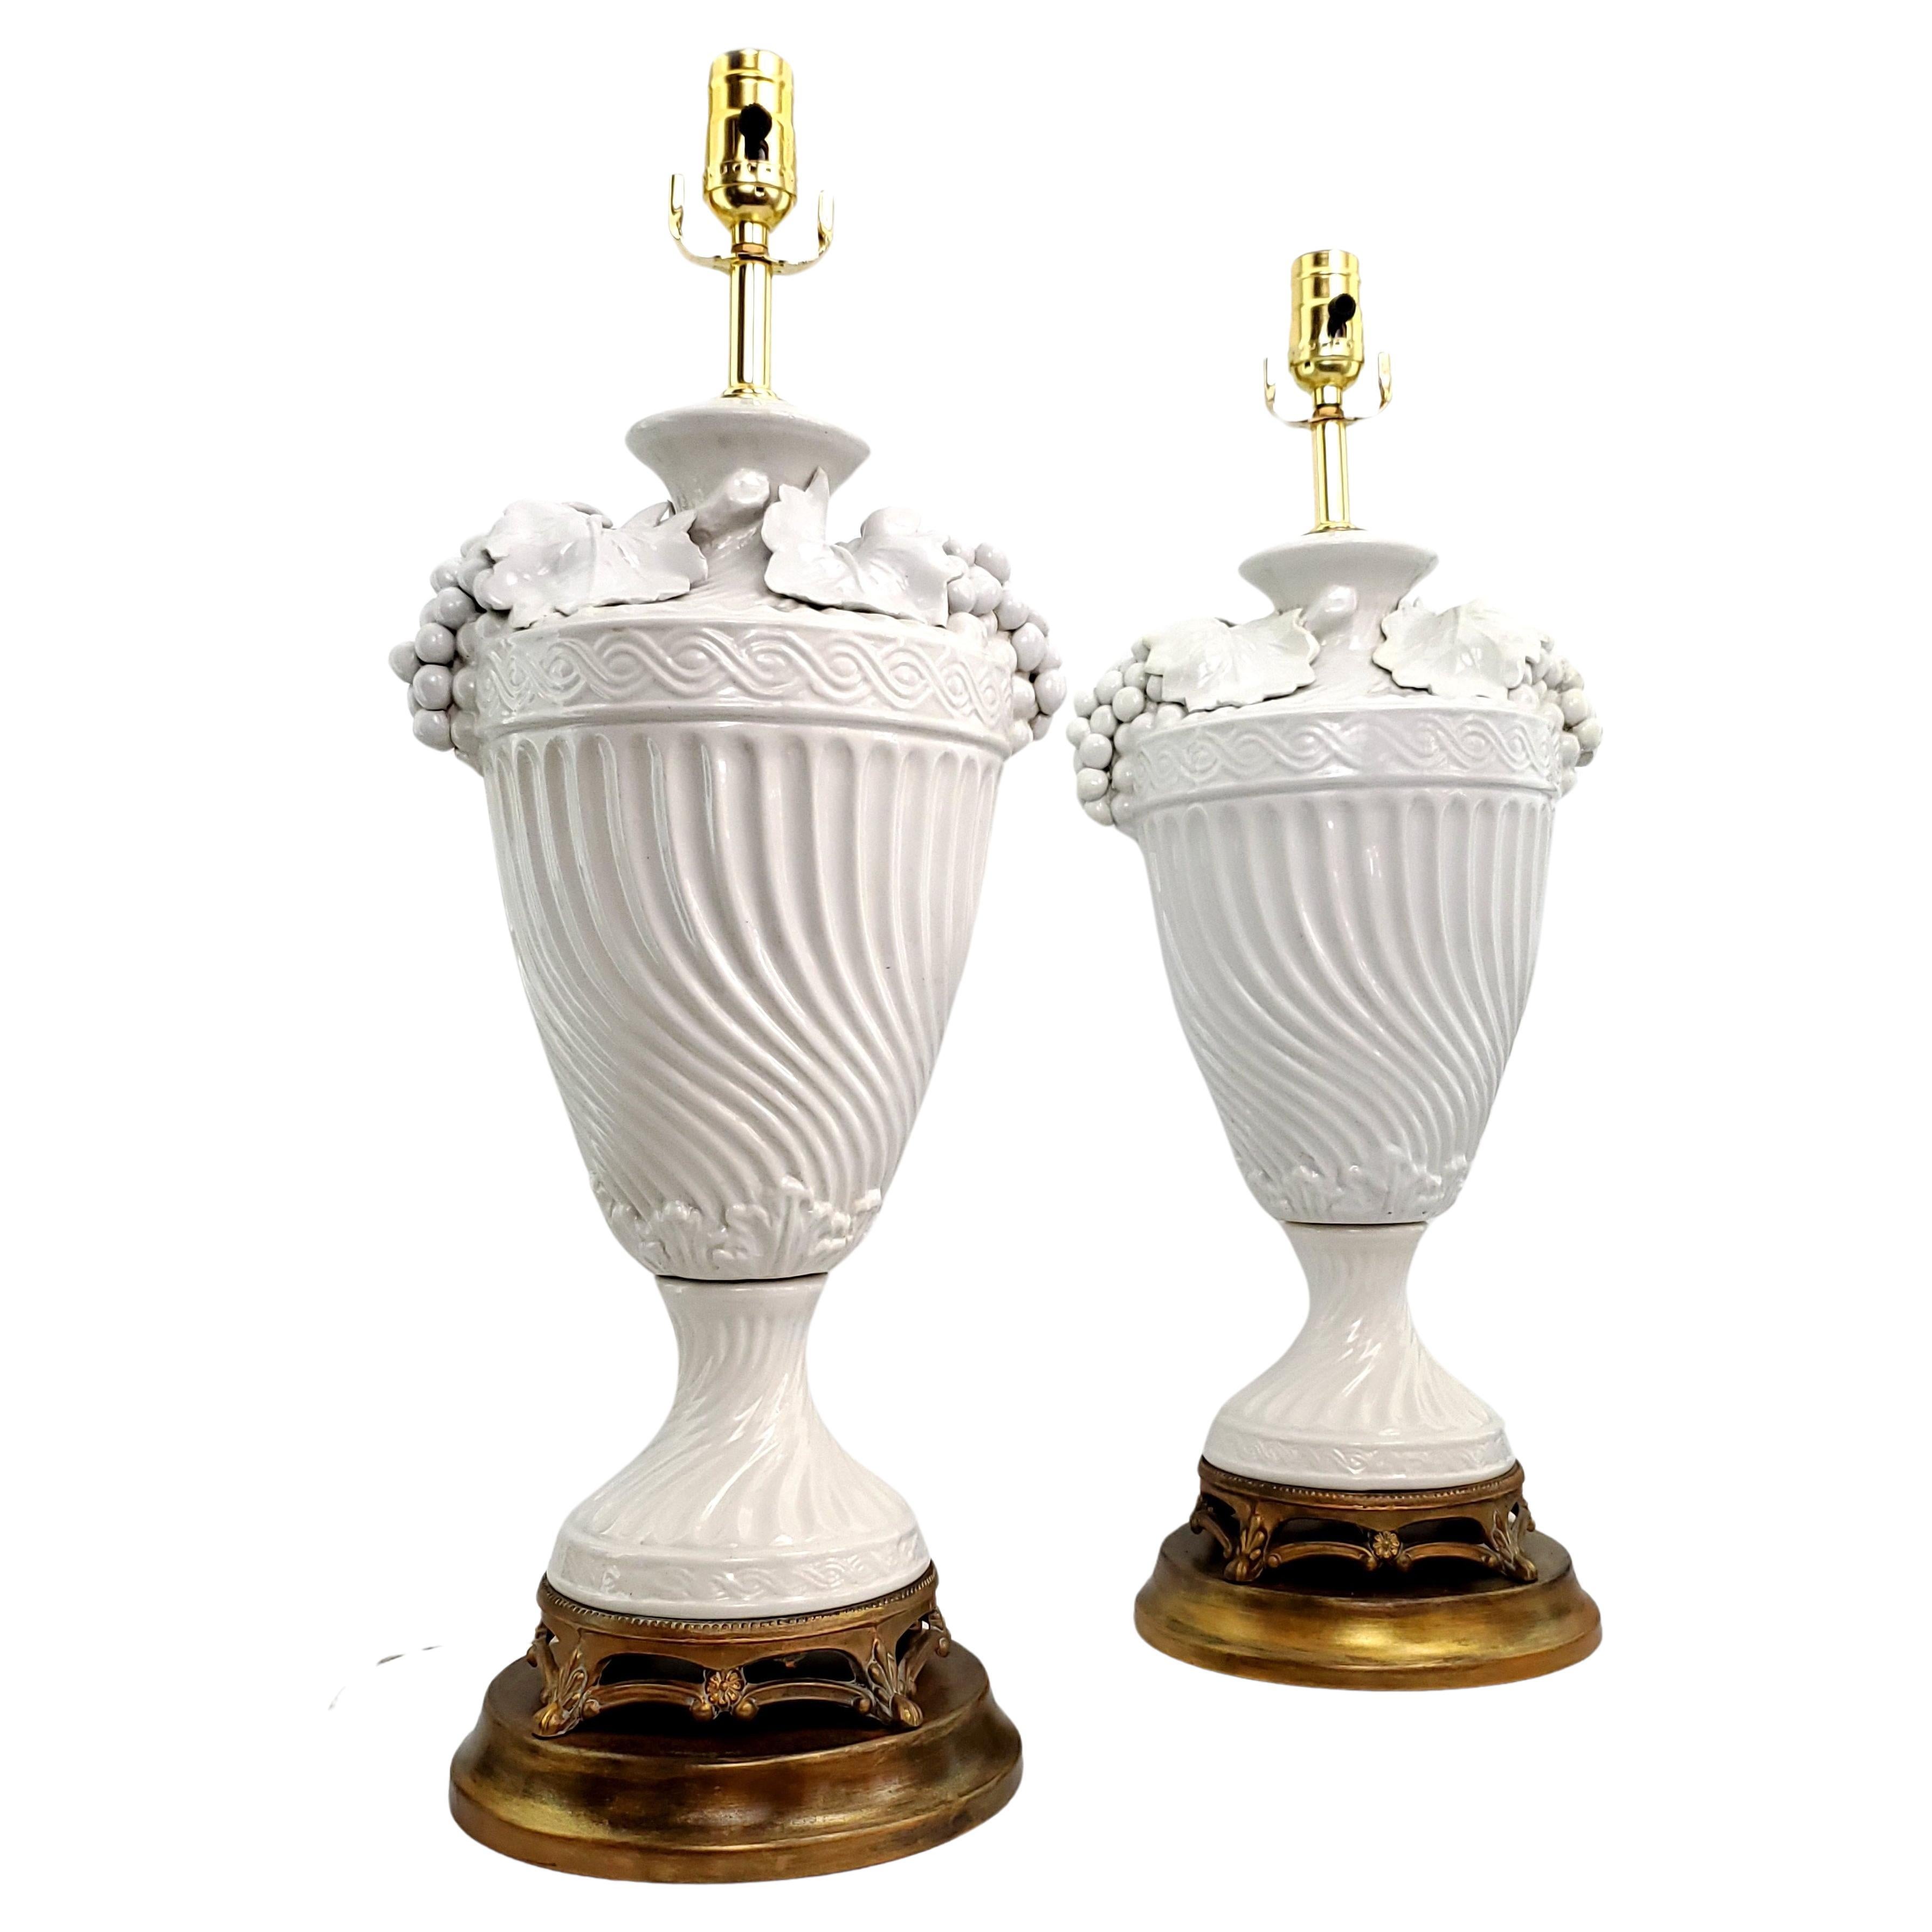 Paire de lampes de table italiennes vintage en porcelaine blanche Blanc de Chine, vers 1950. Ces deux grandes lampes ont été démontées, nettoyées et restaurées par des professionnels.  Les bases métalliques sont d'origine et ont été rafraîchies avec